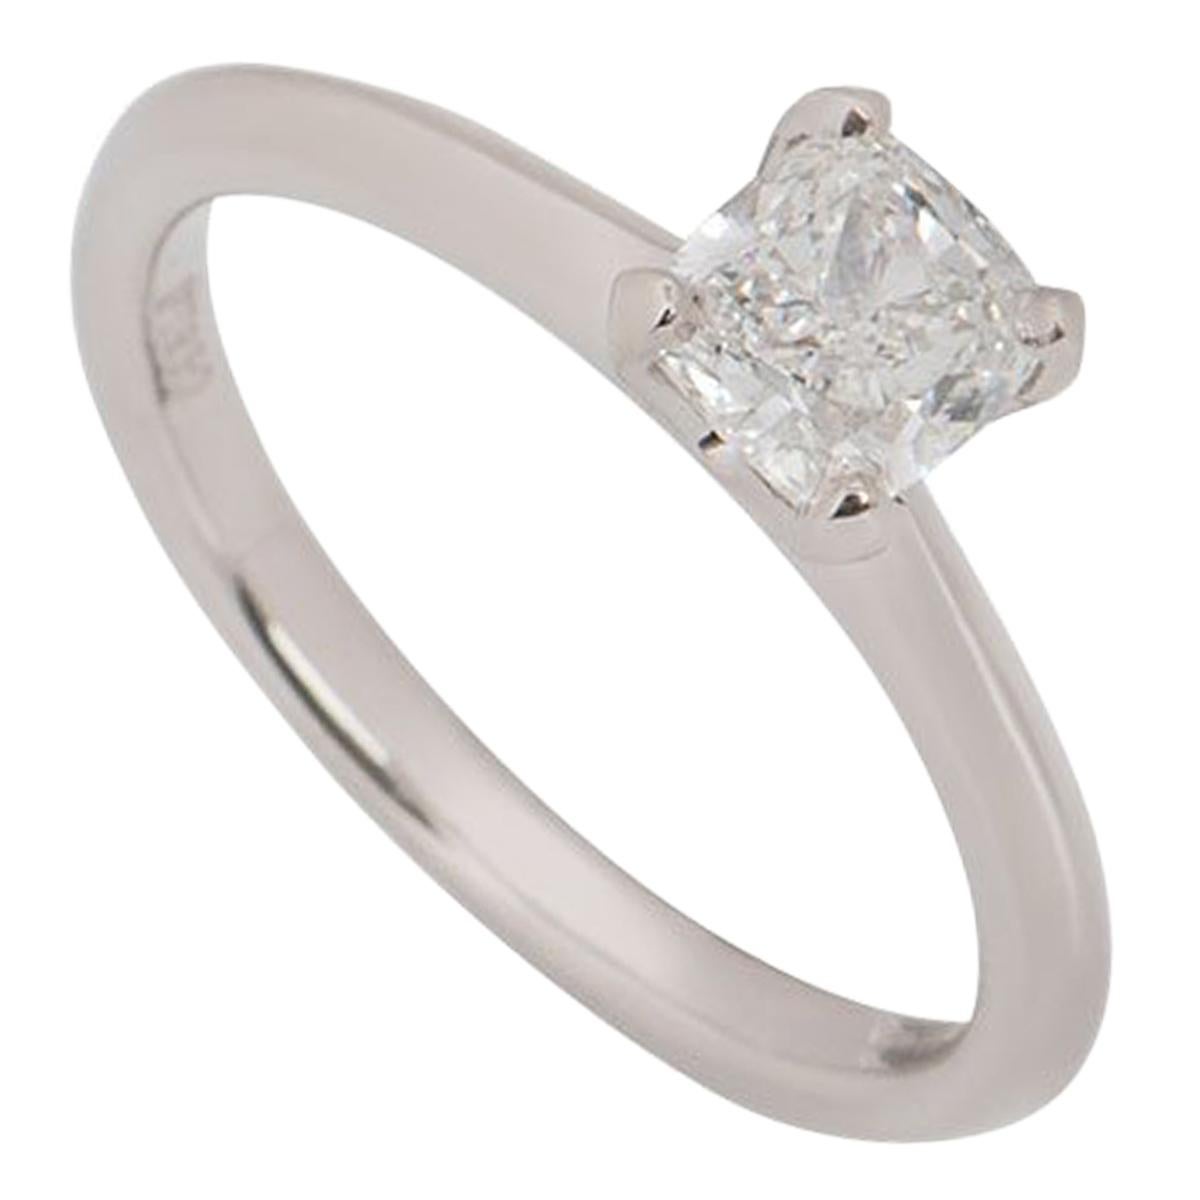 GIA Certified Platinum Cushion Cut Diamond Engagement Ring 0.81 Carat